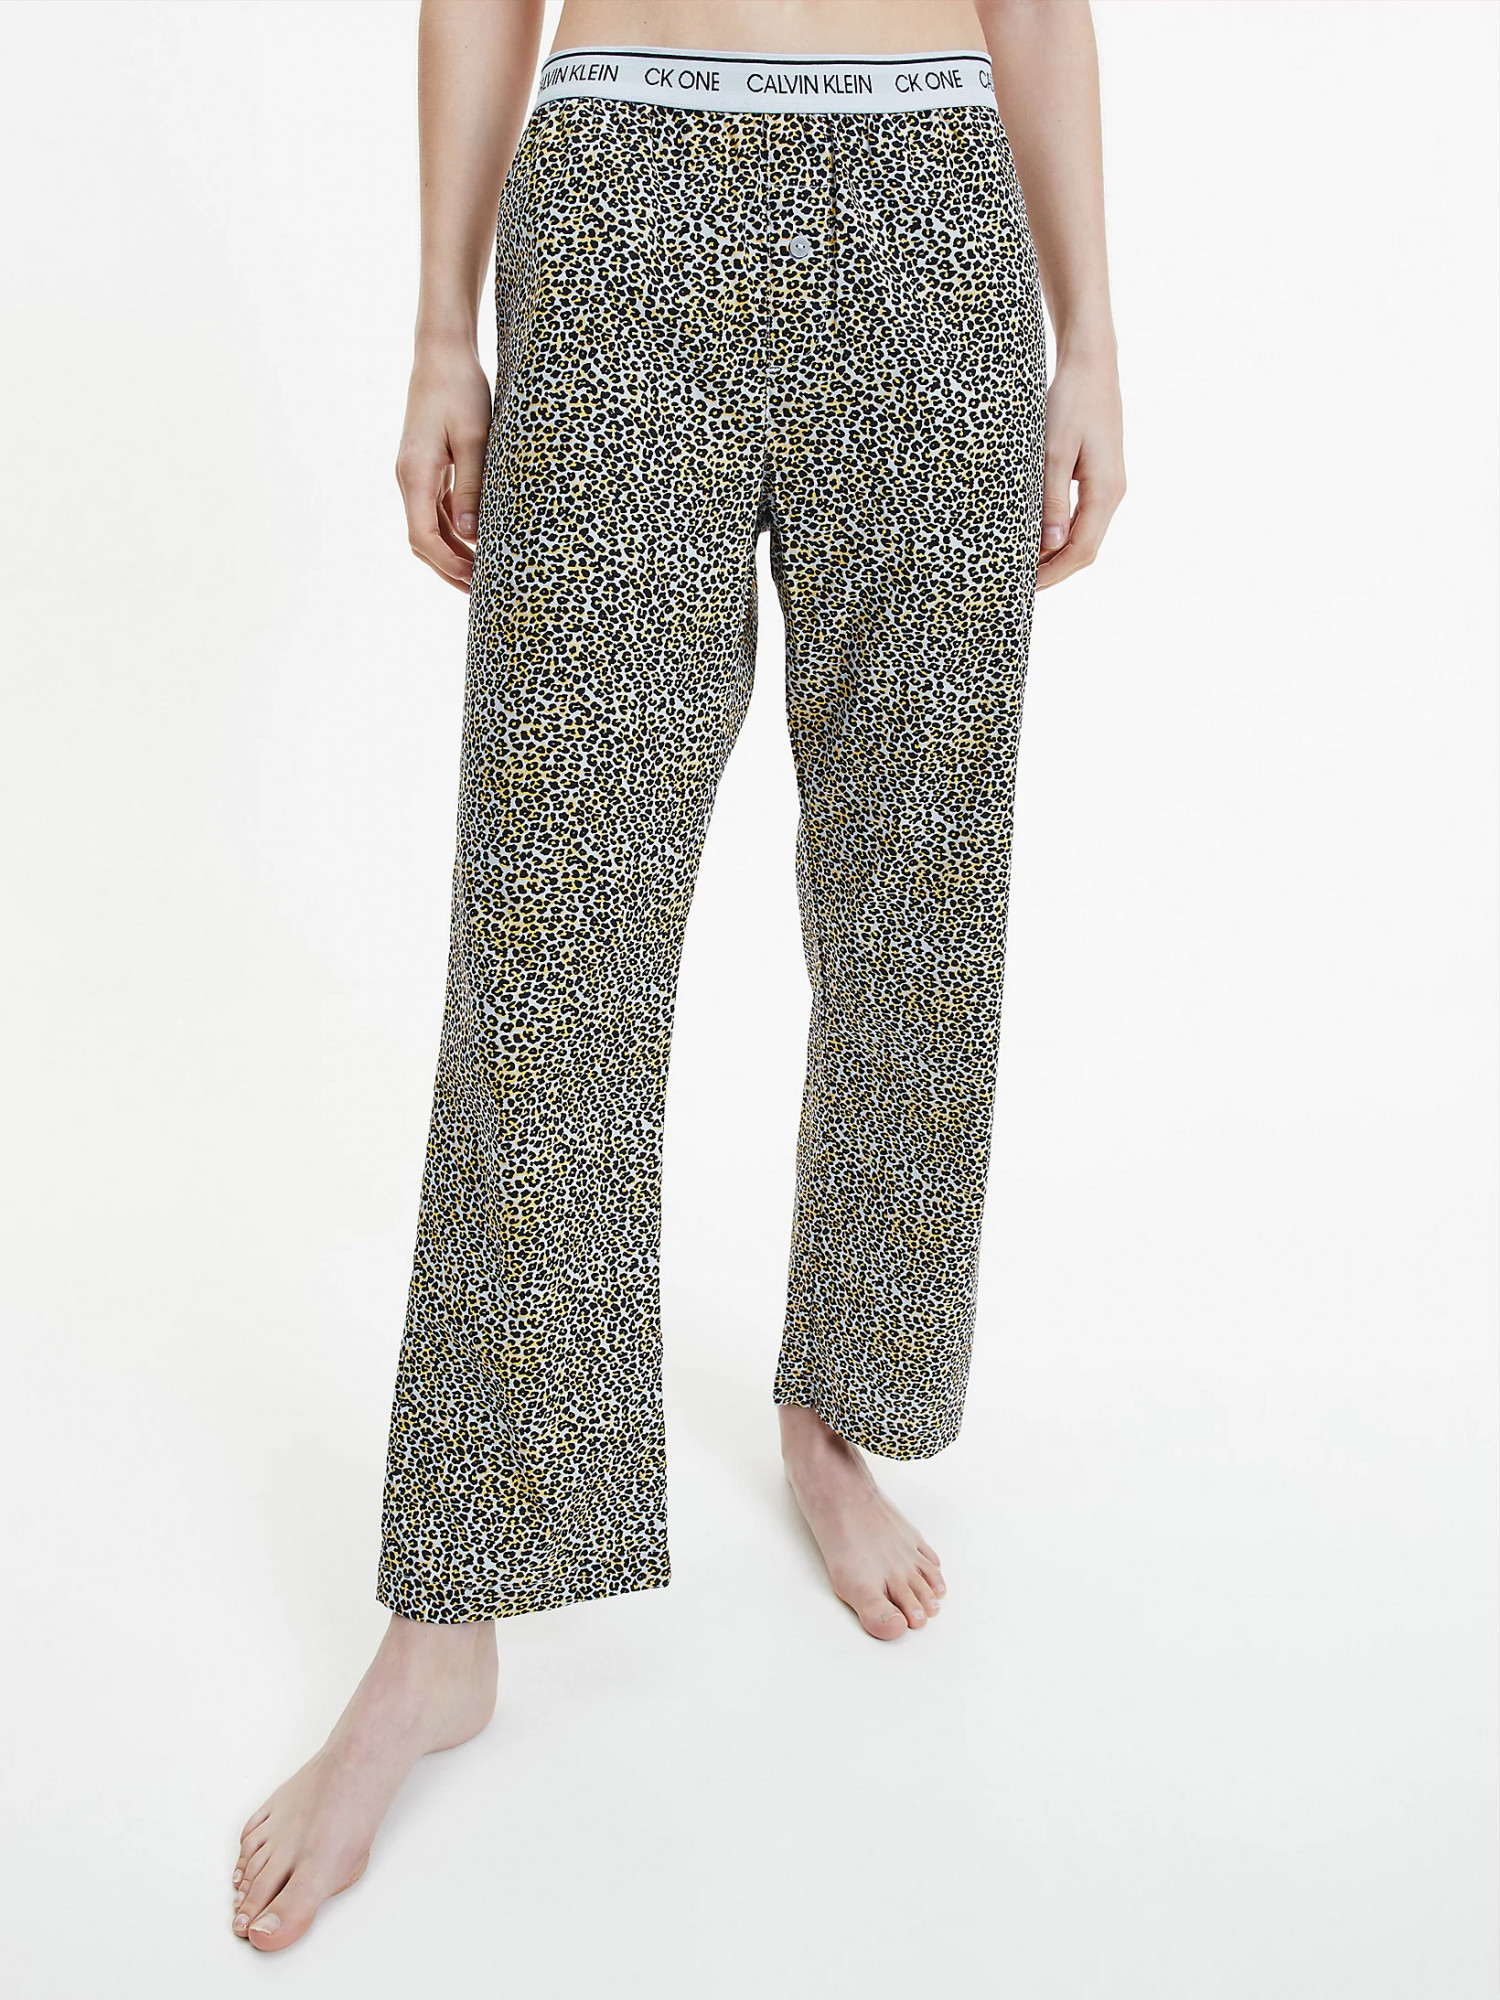 Dámské pyžamové kalhoty QS6433E - V4L Fialová se zvířecím vzorem - Calvin Klein S fialová vzor